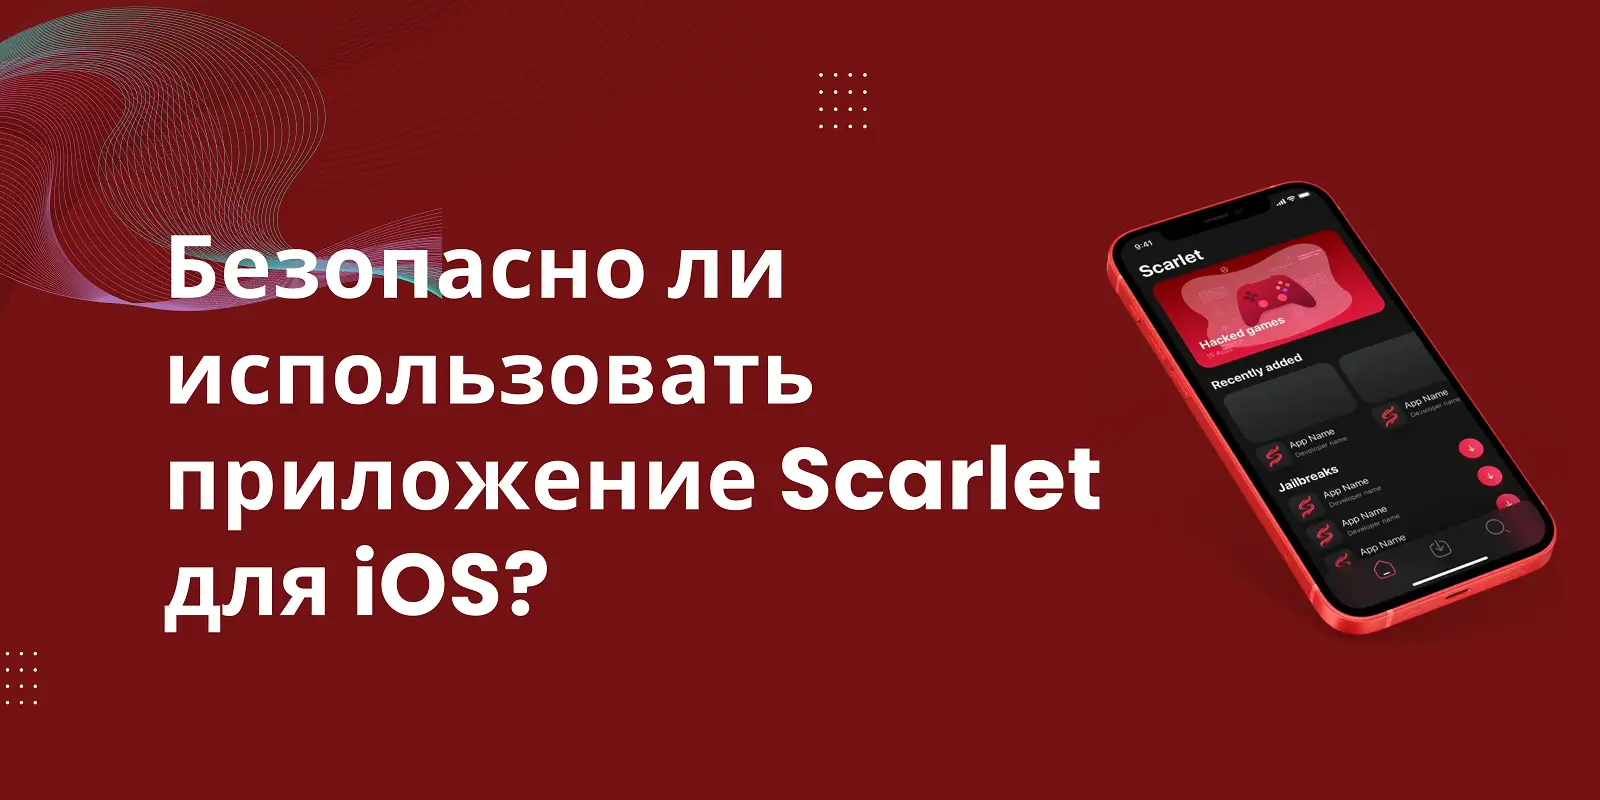 Безопасно ли использовать приложение Scarlet для iOS? Читать информацию